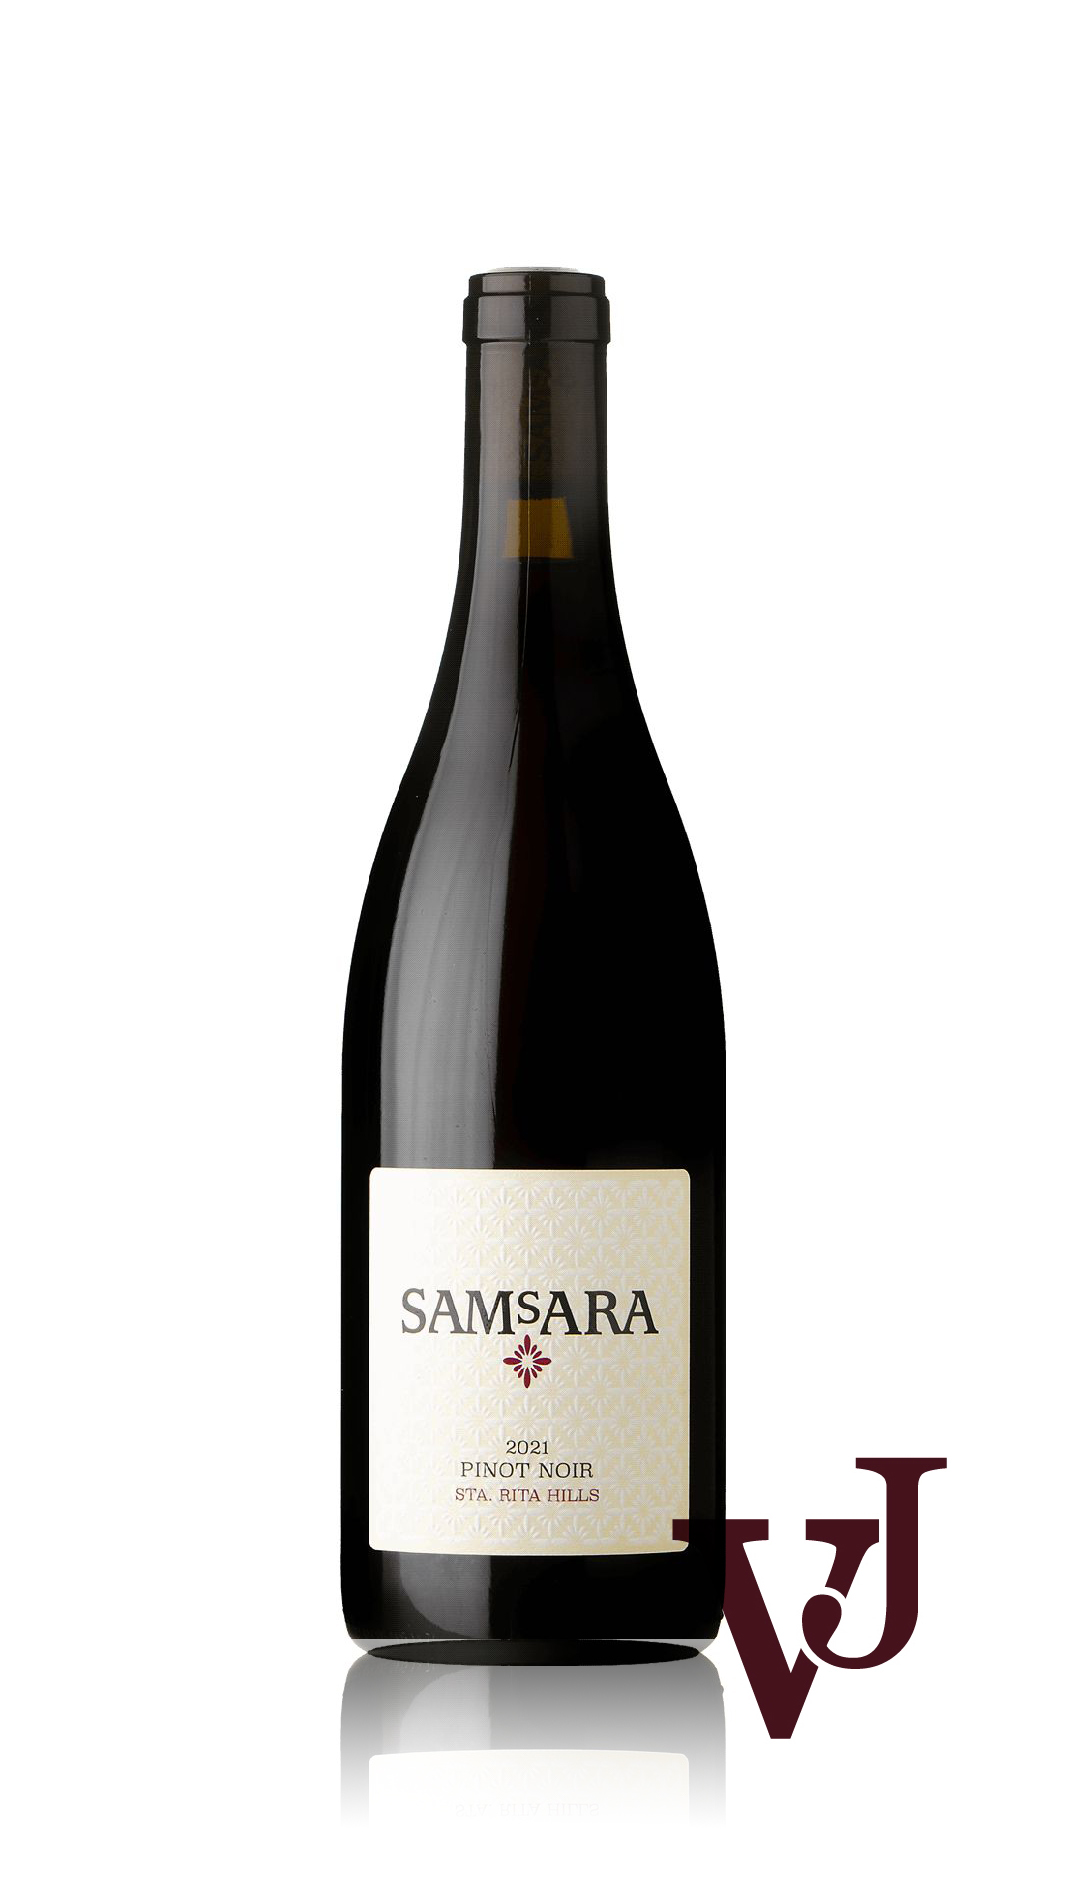 Rött Vin - Samsara Pinot Noir Santa Rita Hills 2021 artikel nummer 9443101 från producenten Samsara Wine Company från området USA